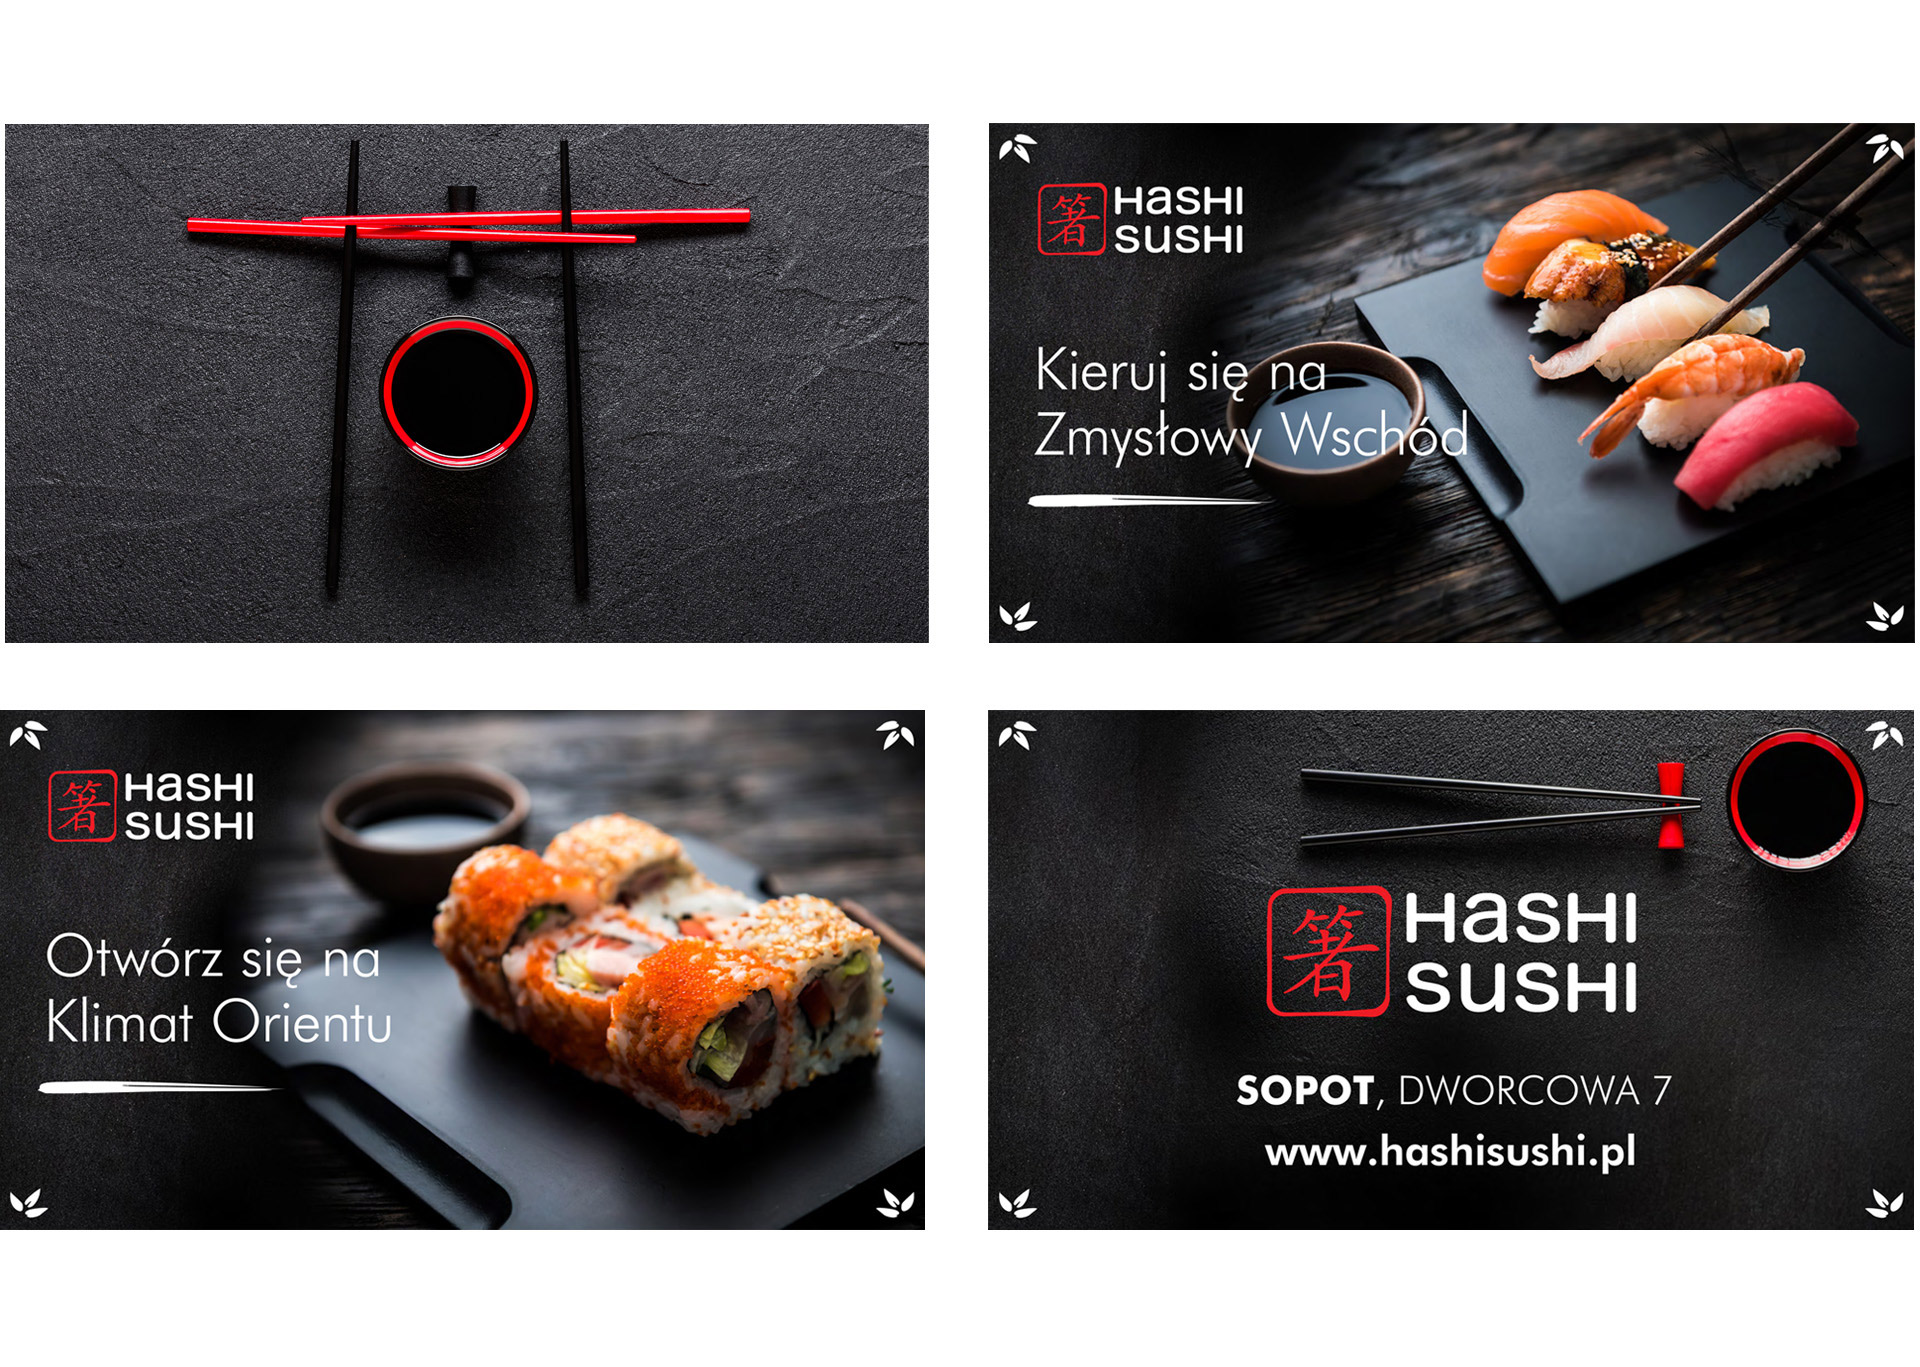 Hashi Sushi, identyfikacja wizualna, komunikacja reklamowa, projekt graficzny, key visual, kreacja, wizytówka